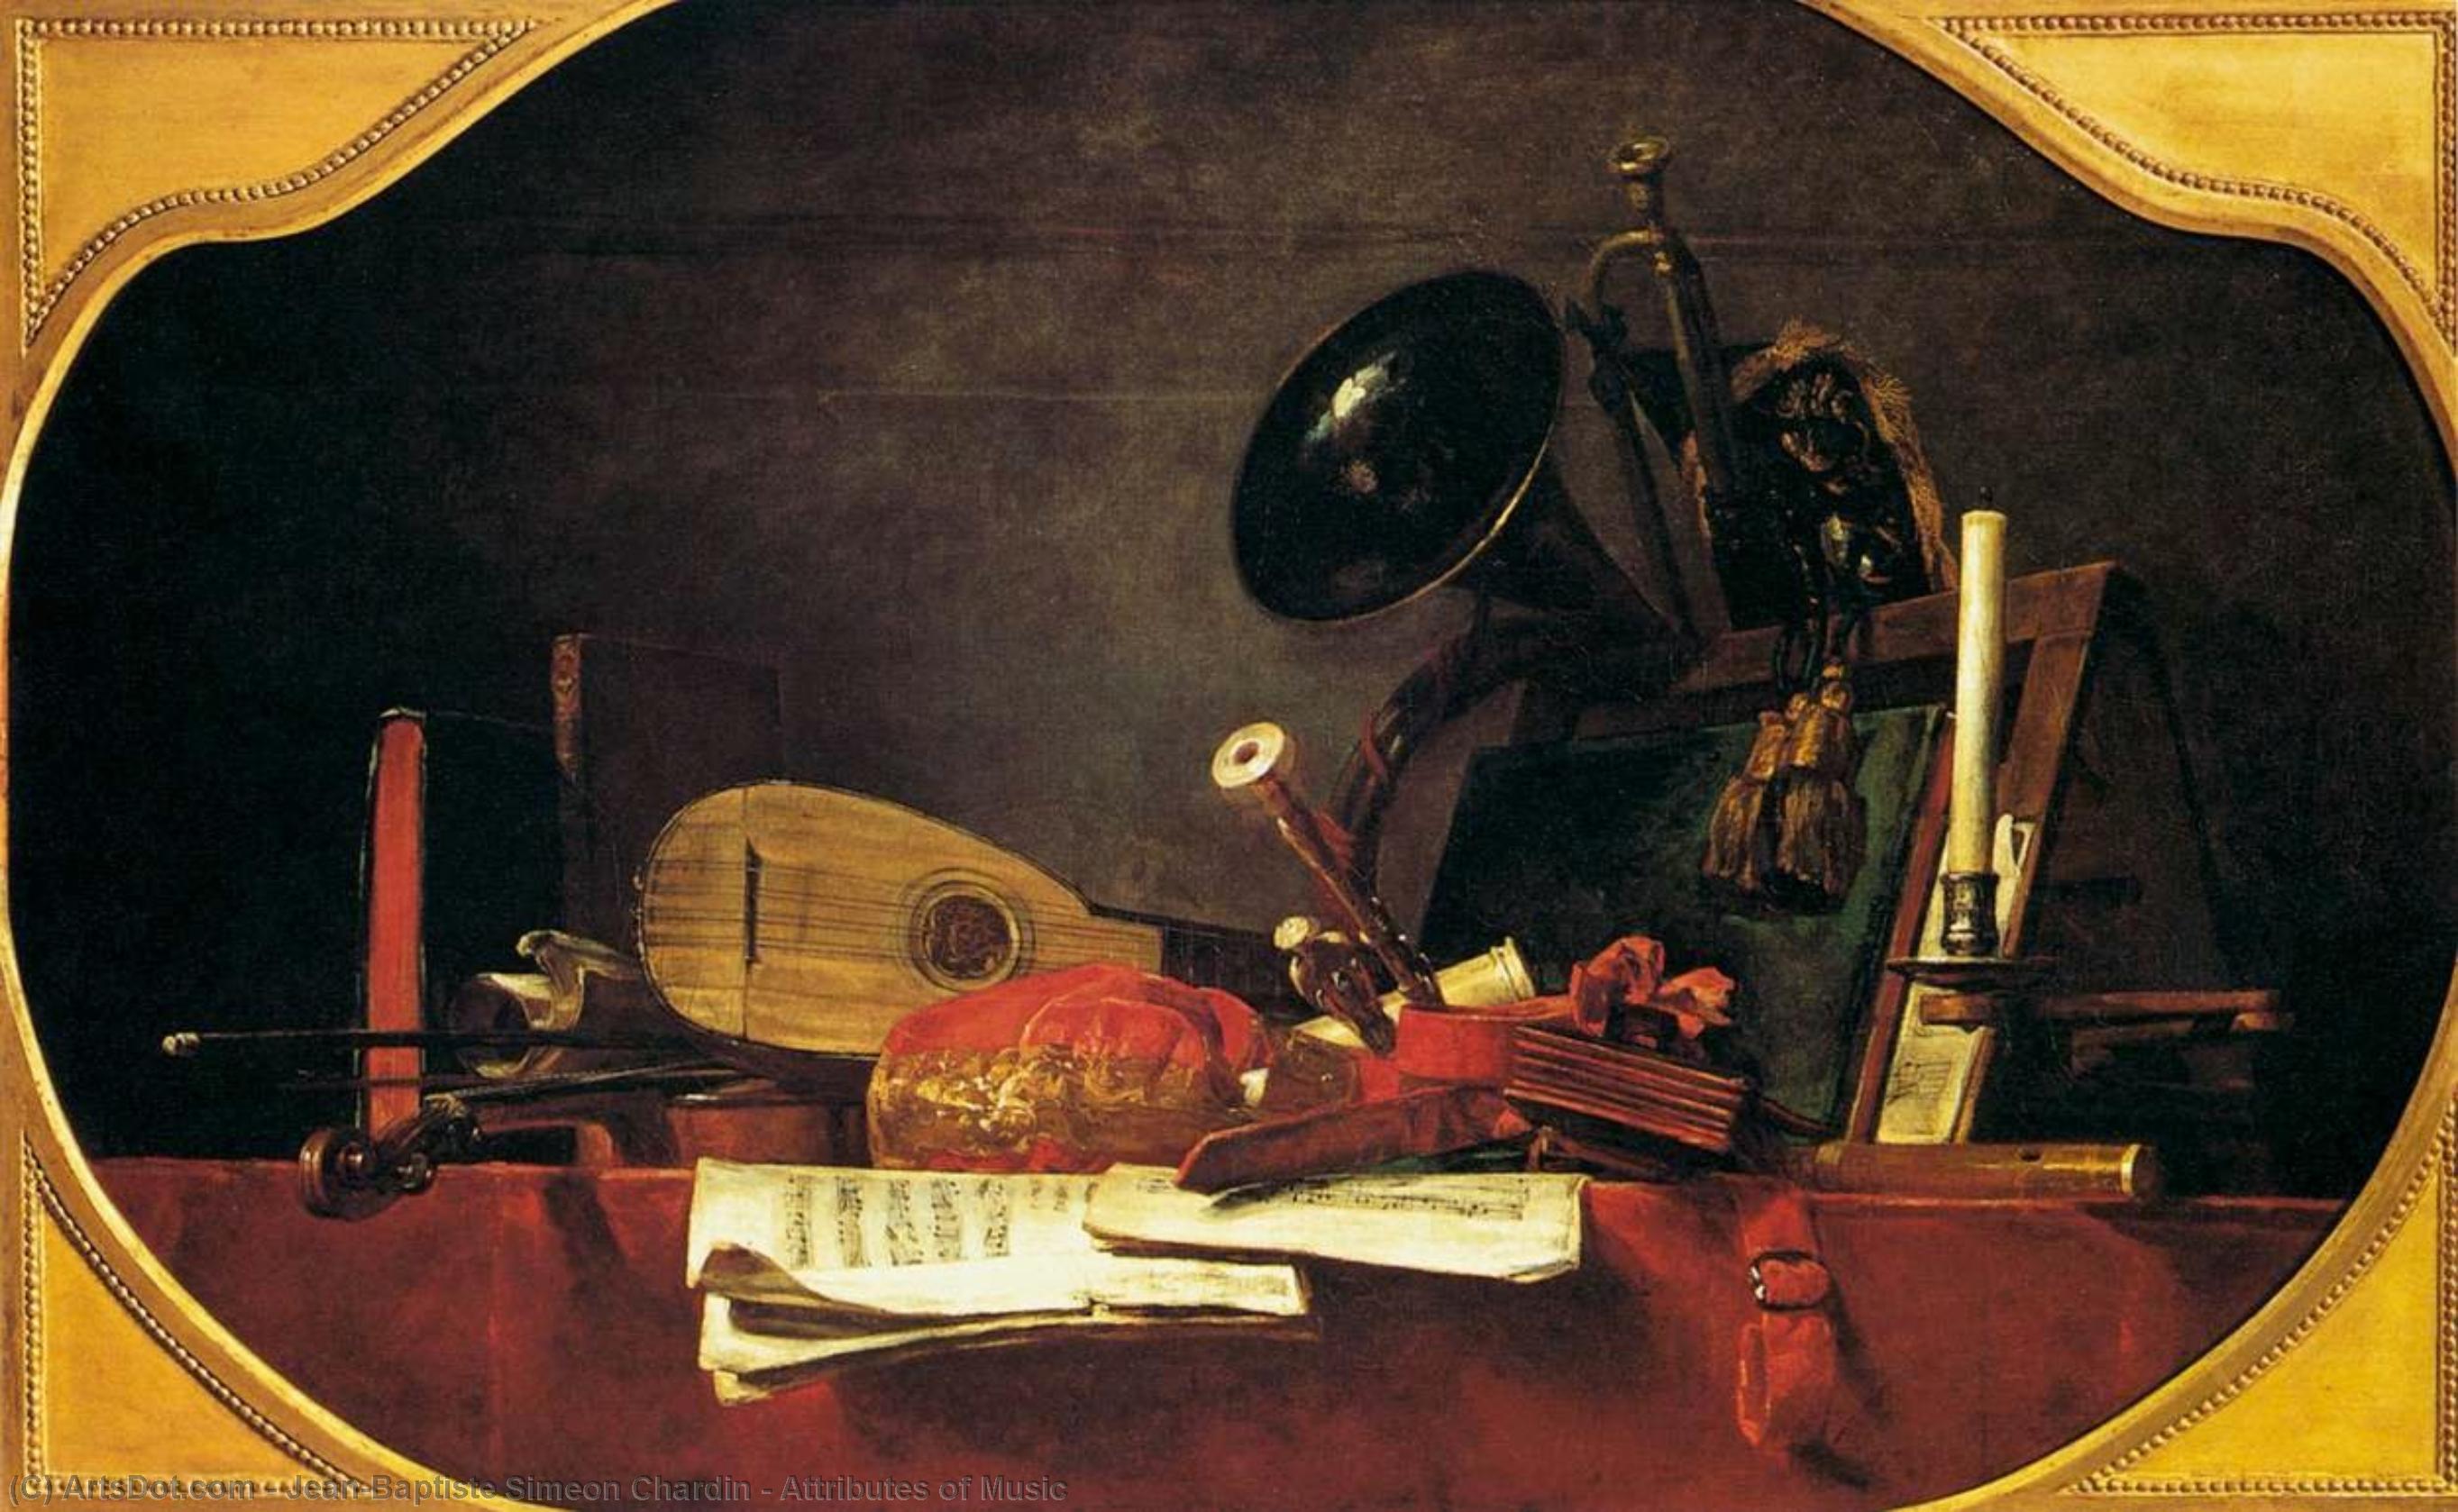 WikiOO.org - Enciclopedia of Fine Arts - Pictura, lucrări de artă Jean-Baptiste Simeon Chardin - Attributes of Music